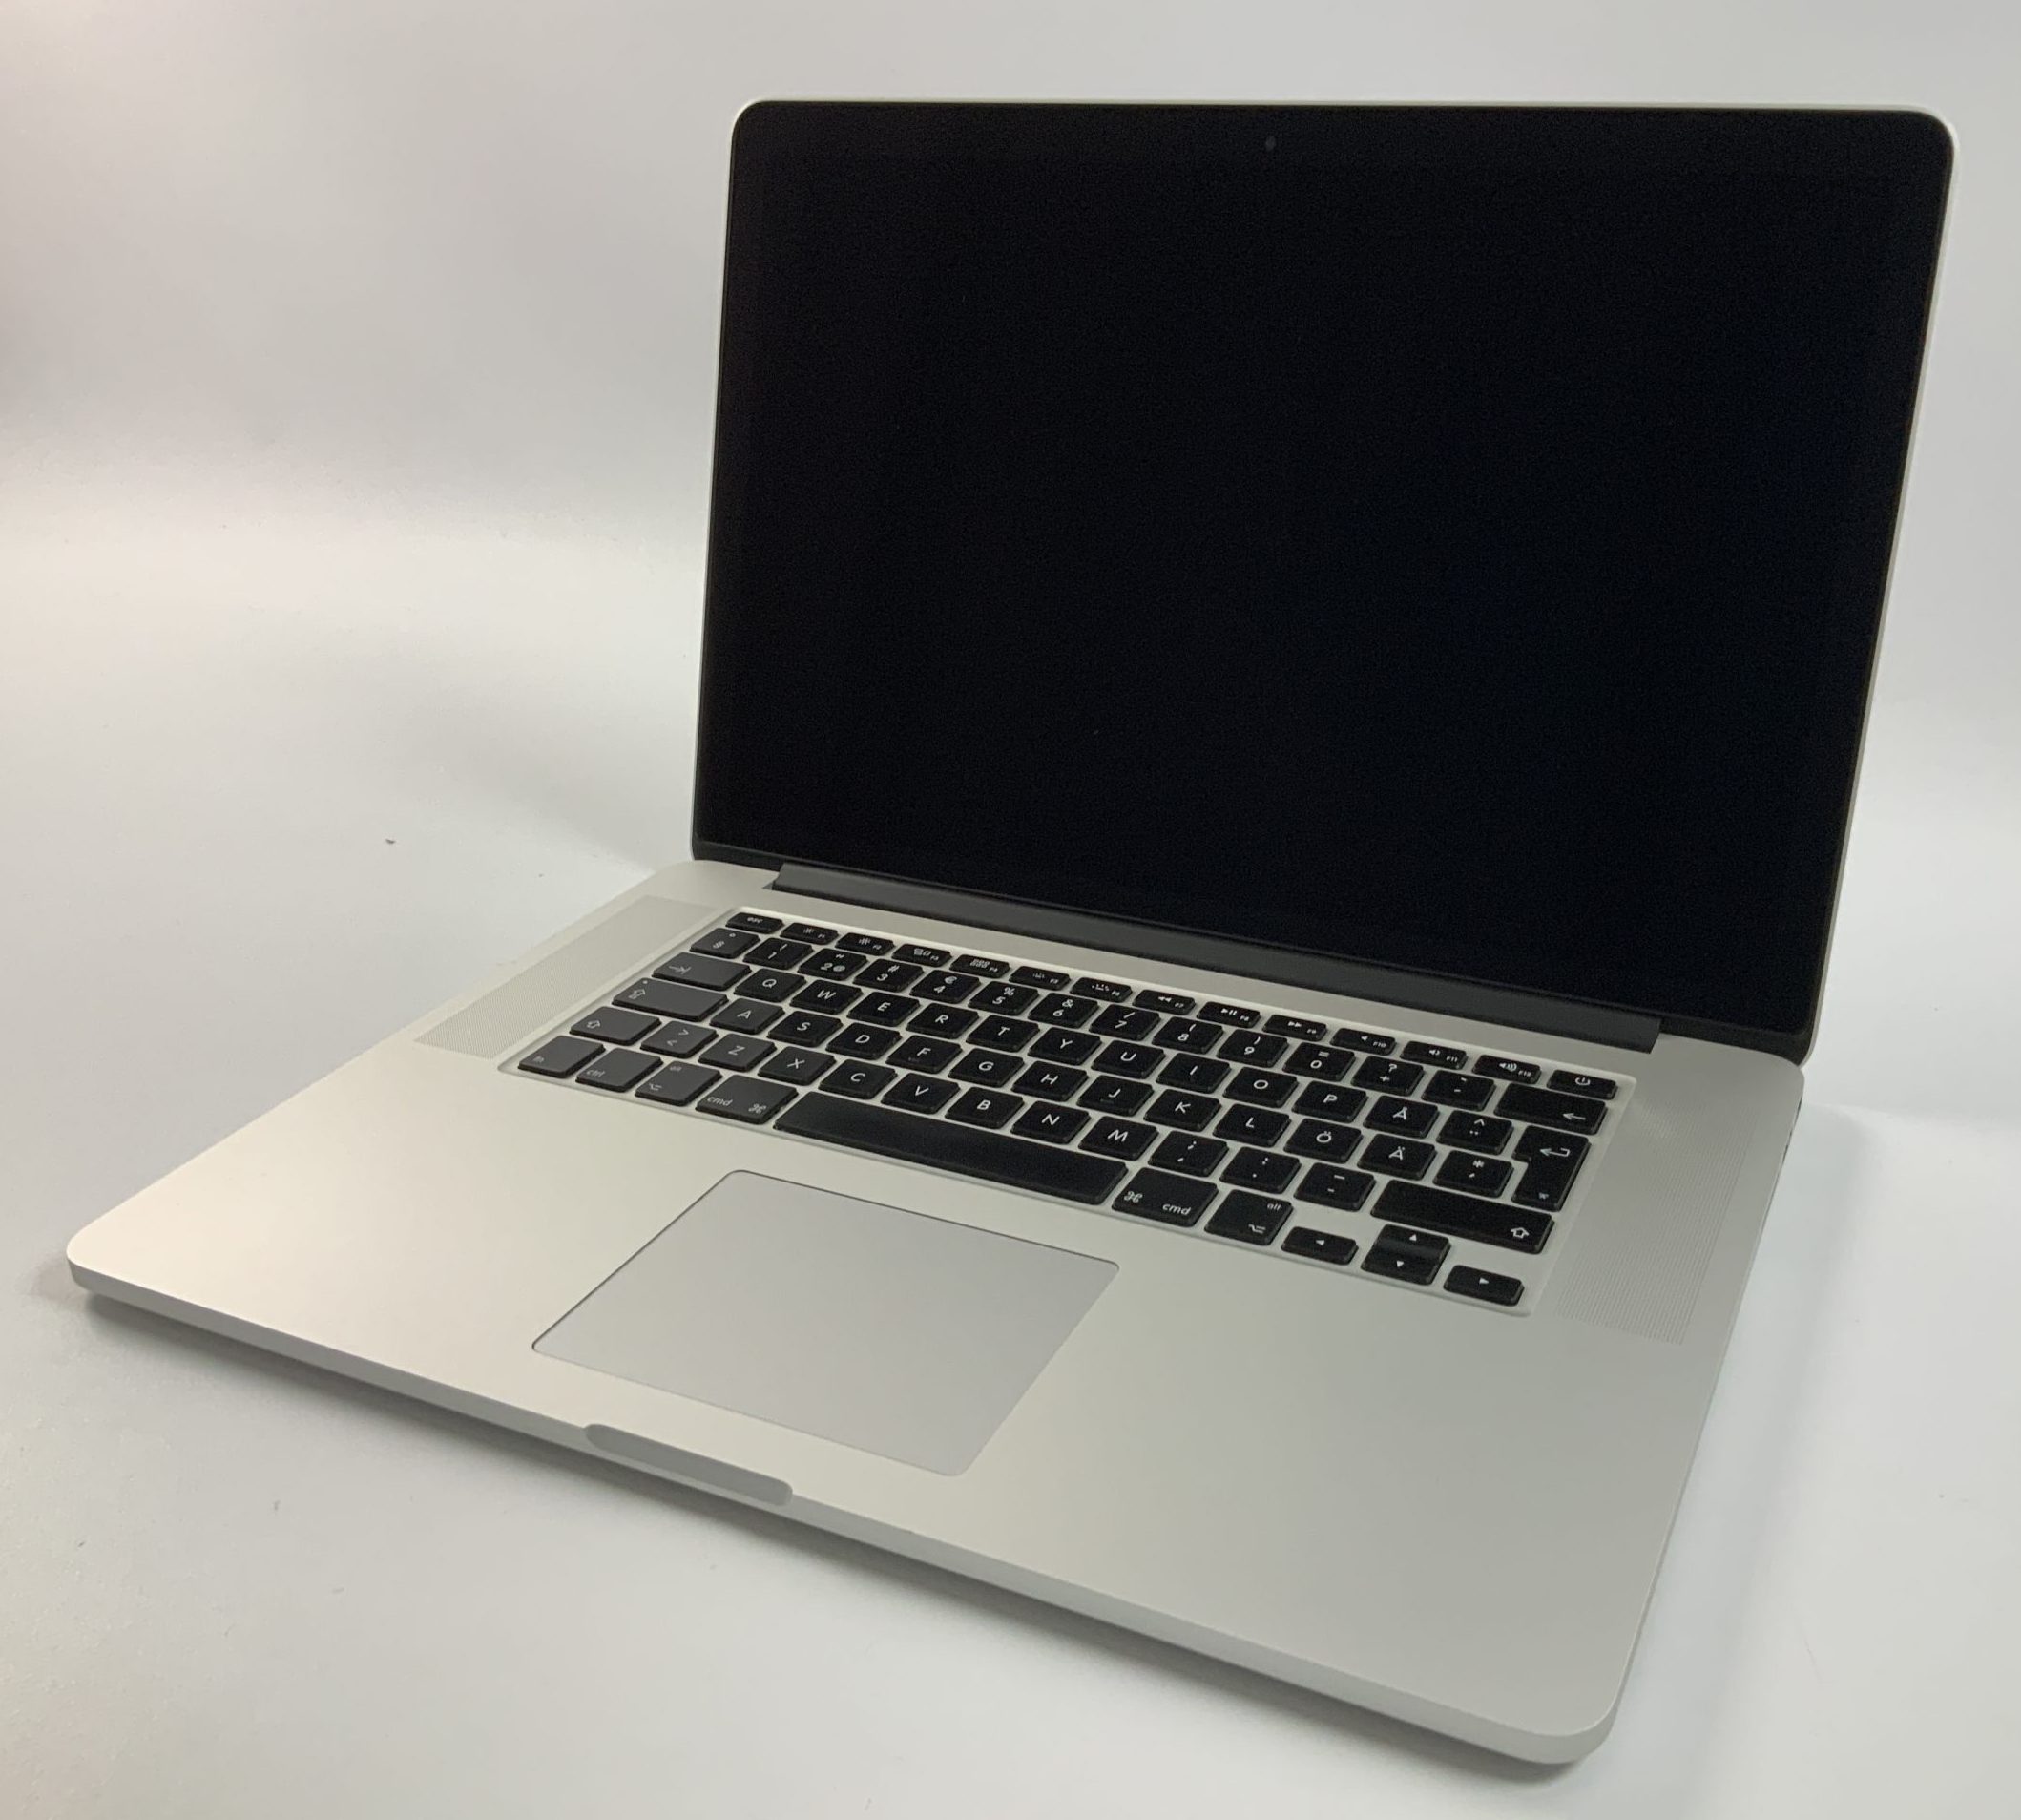 MacBook Pro Retina 15" Mid 2014 (Intel Quad-Core i7 2.2 GHz 16 GB RAM 256 GB SSD), Intel Quad-Core i7 2.2 GHz, 16 GB RAM, 256 GB SSD, Afbeelding 1